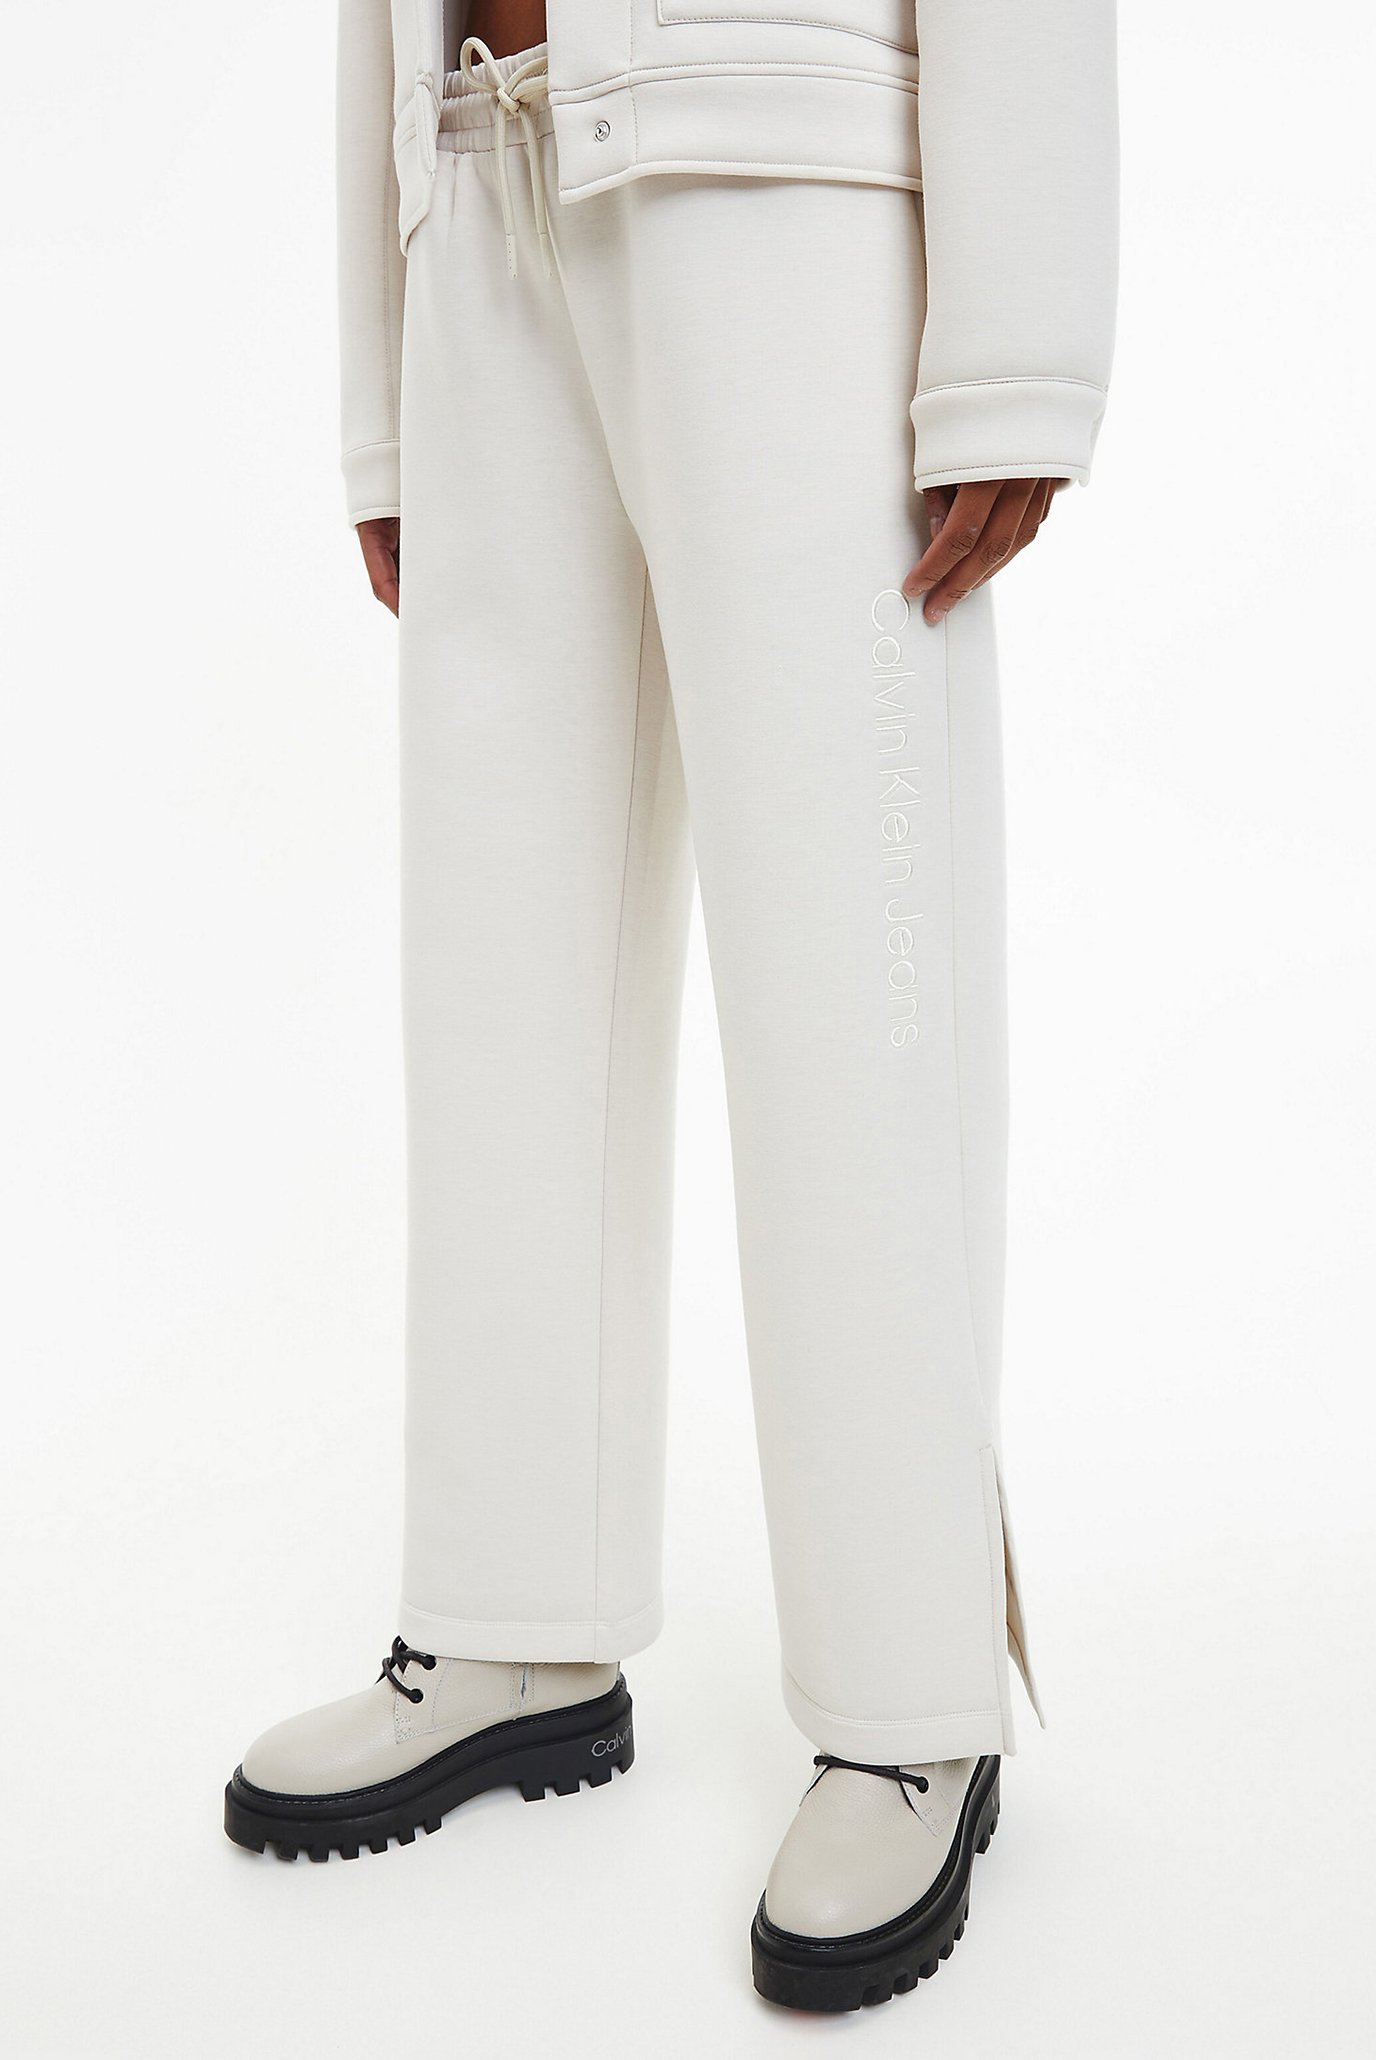 Жіночі білі спортивні штани EMBROIDERY SPACER JOG PANTS 1